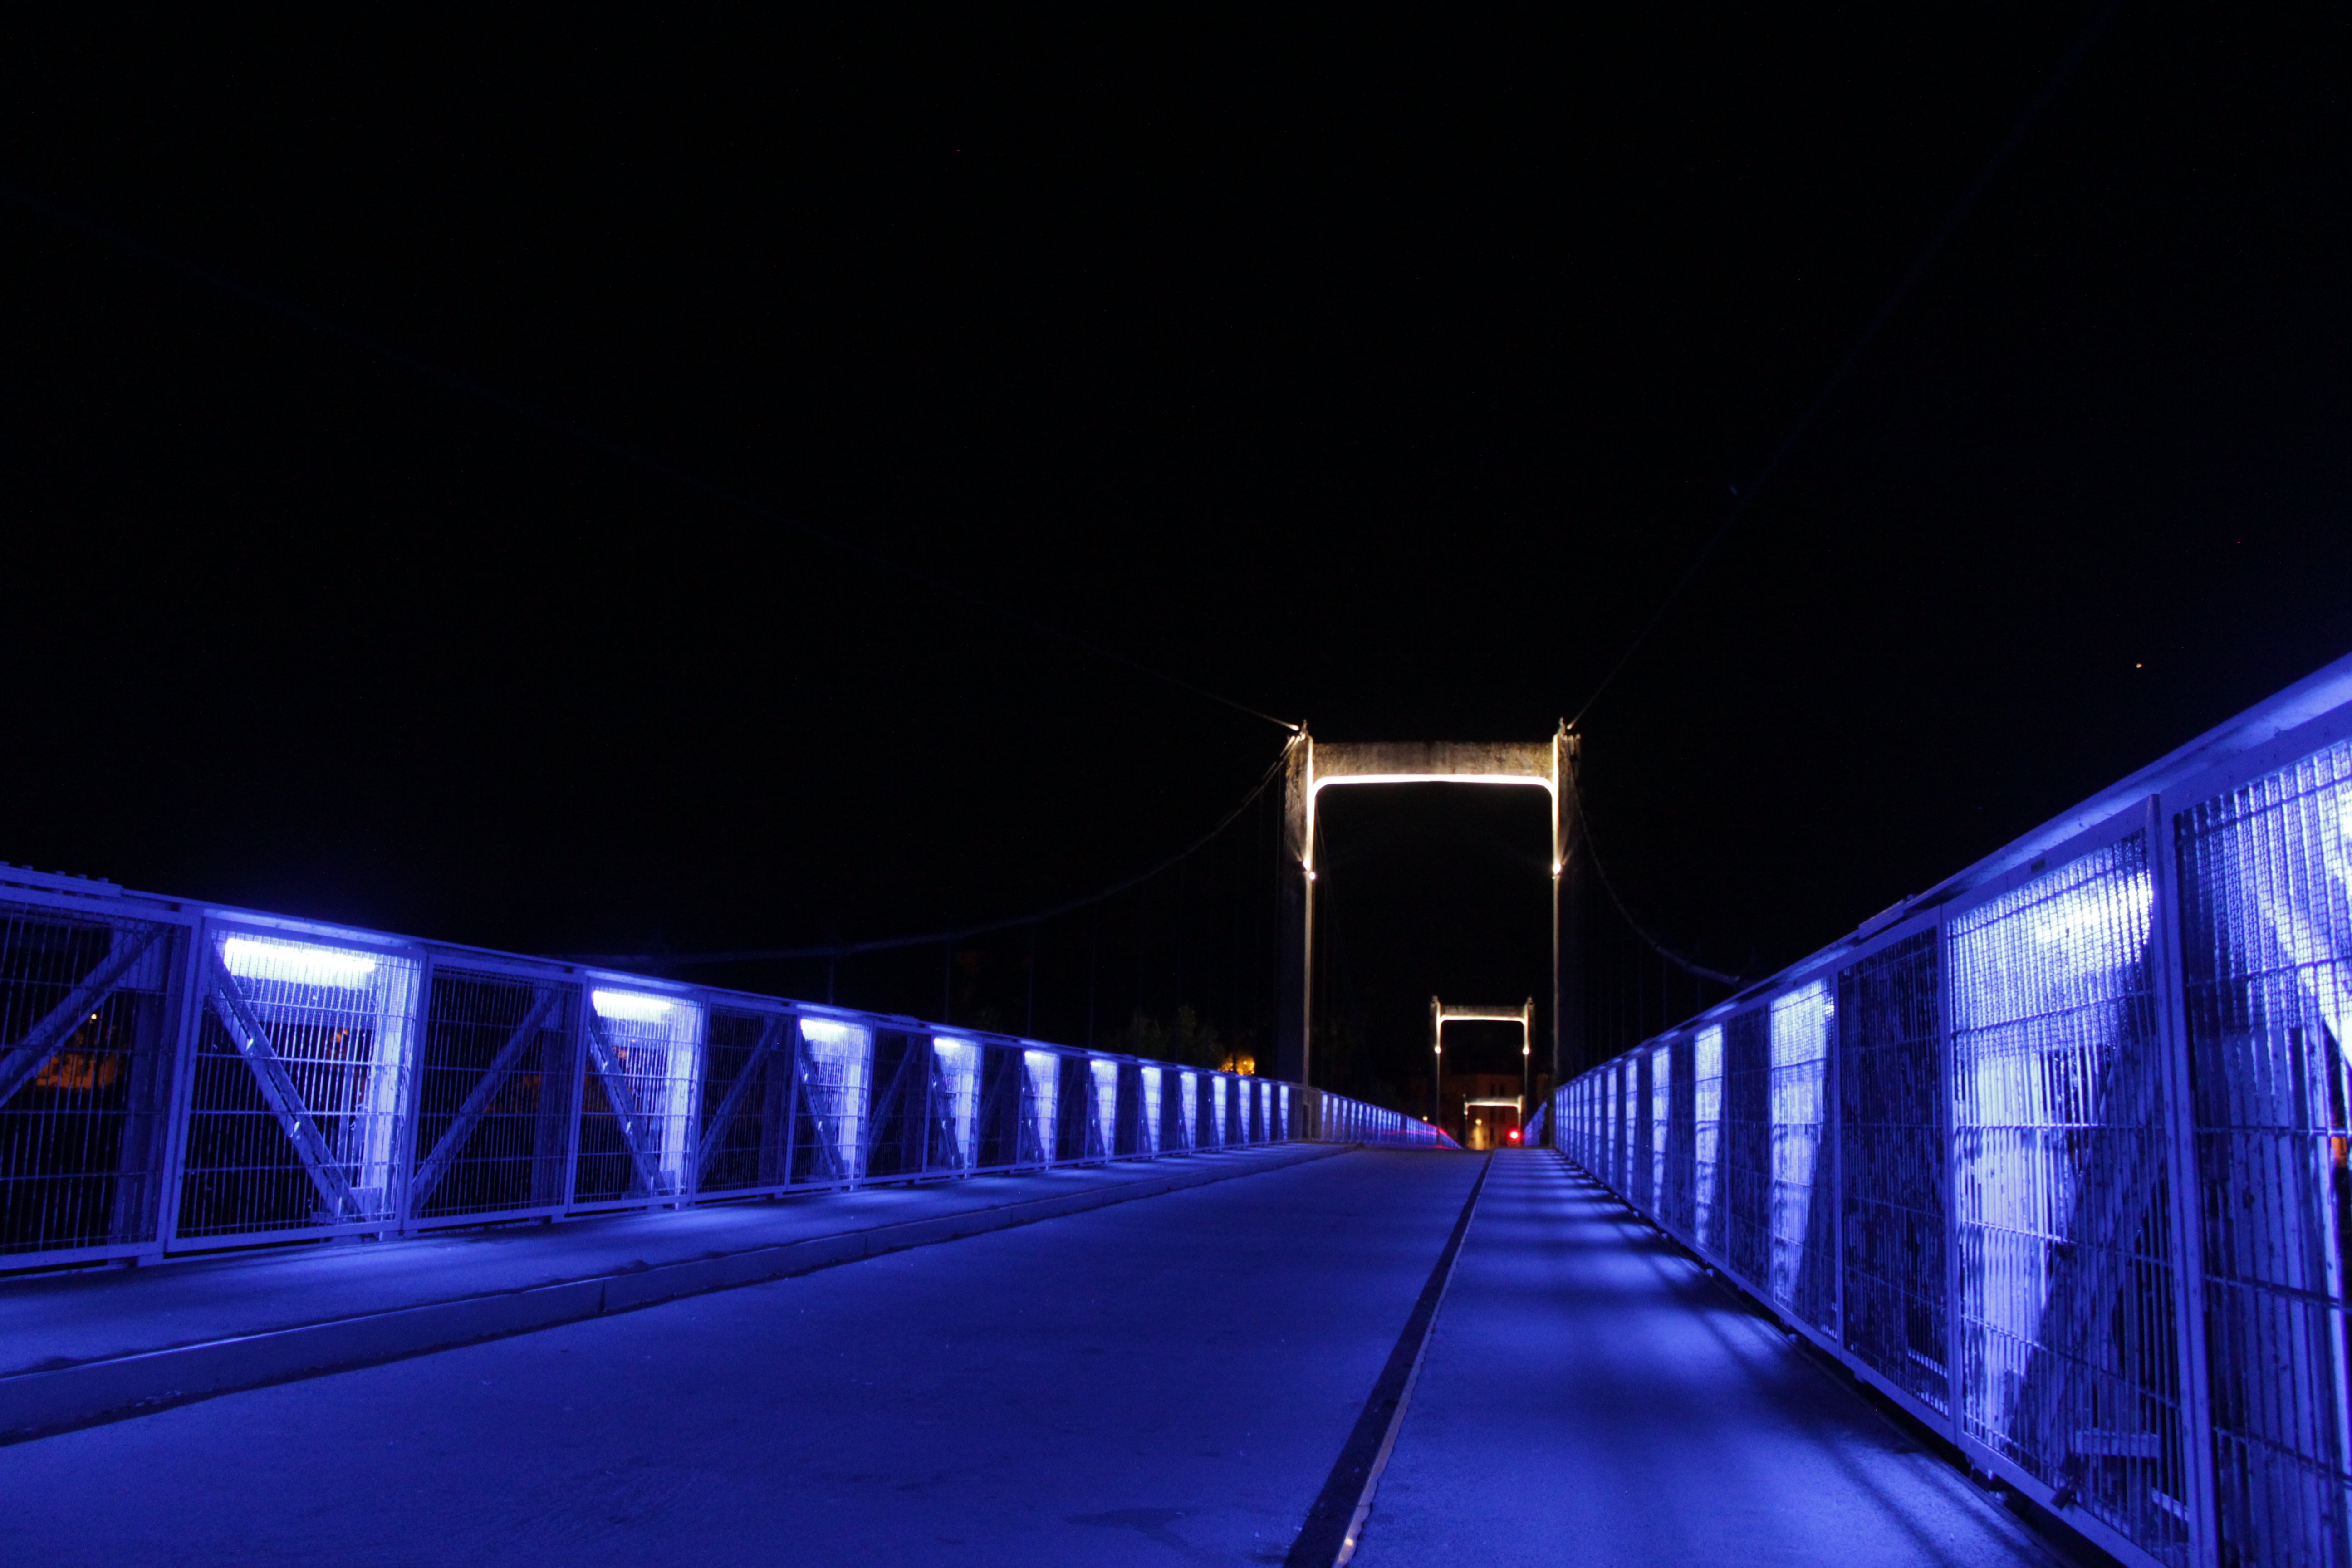 long blue-lit suspension bridge with two arches